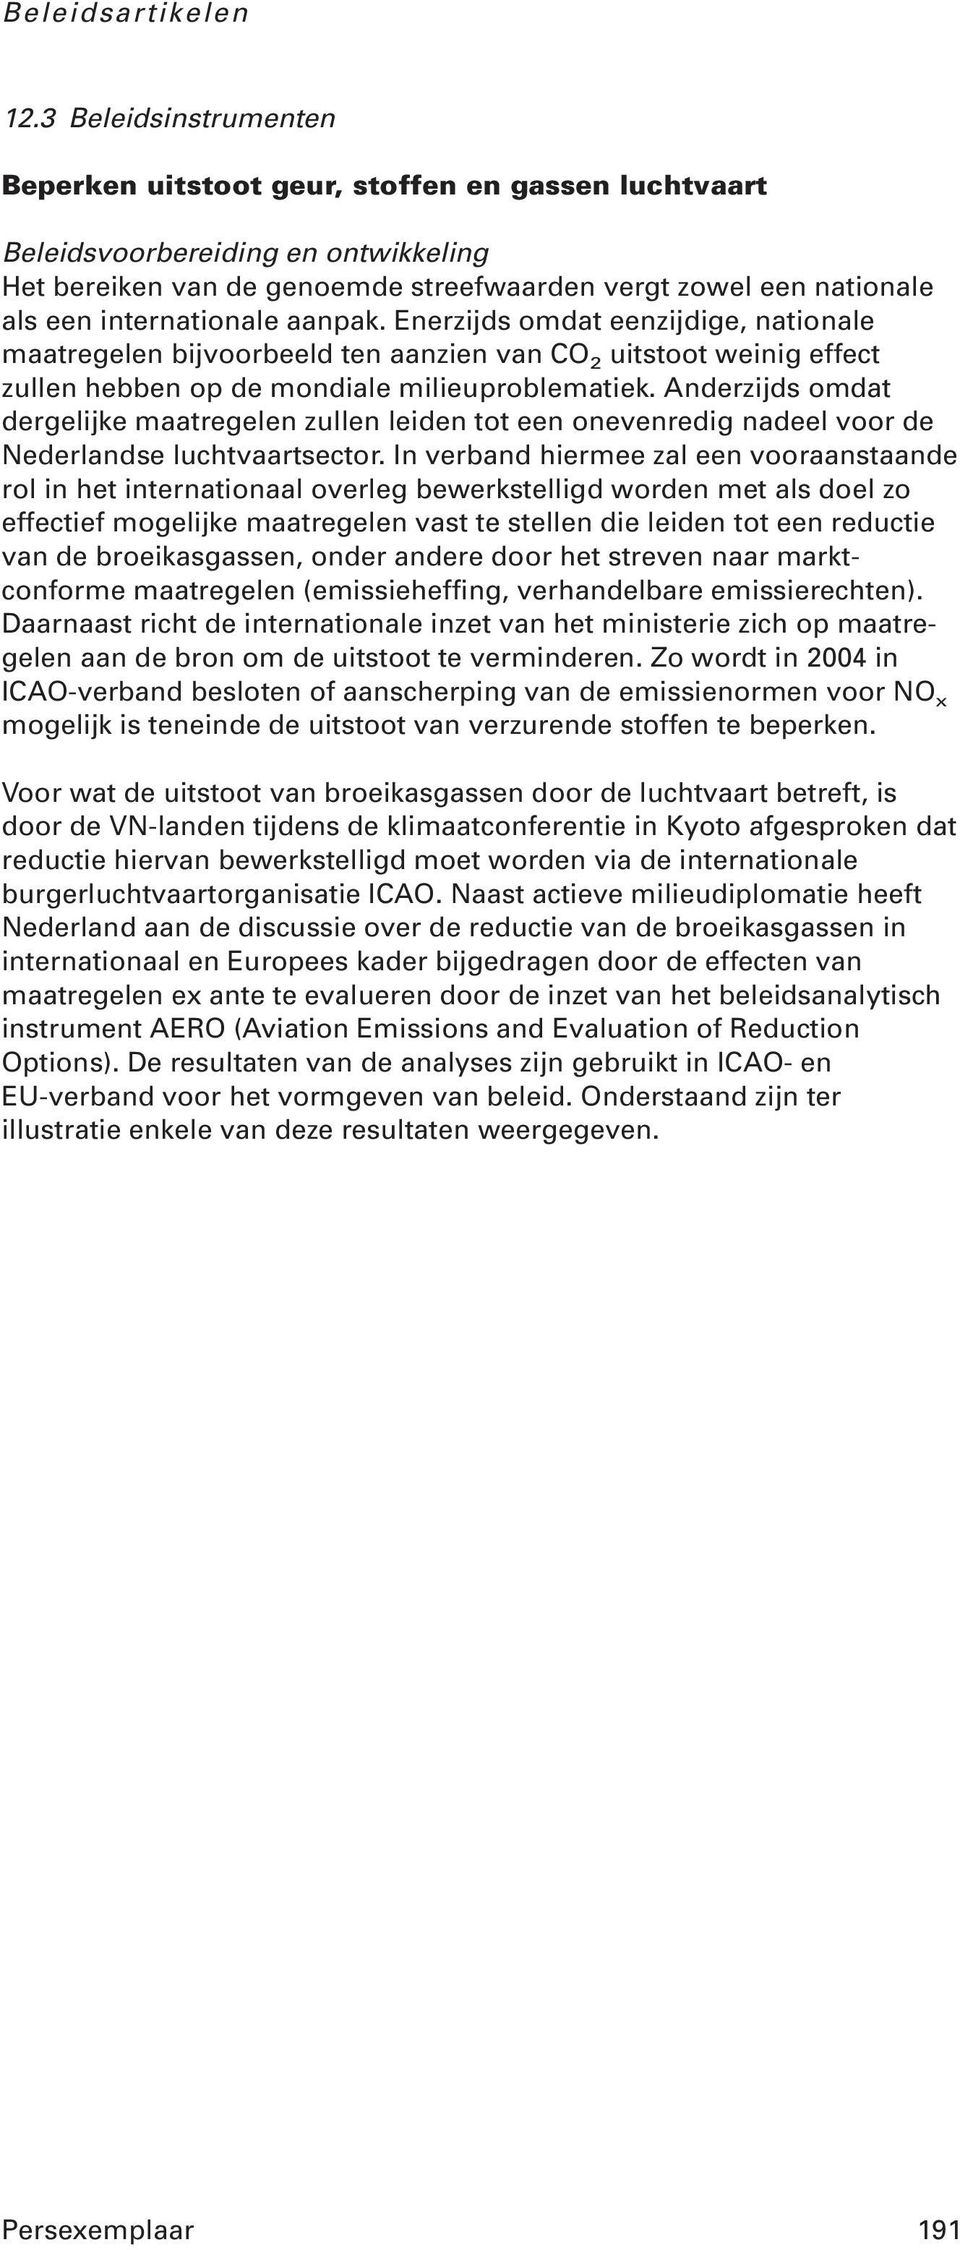 Anderzijds omdat dergelijke maatregelen zullen leiden tot een onevenredig nadeel voor de Nederlandse luchtvaartsector.